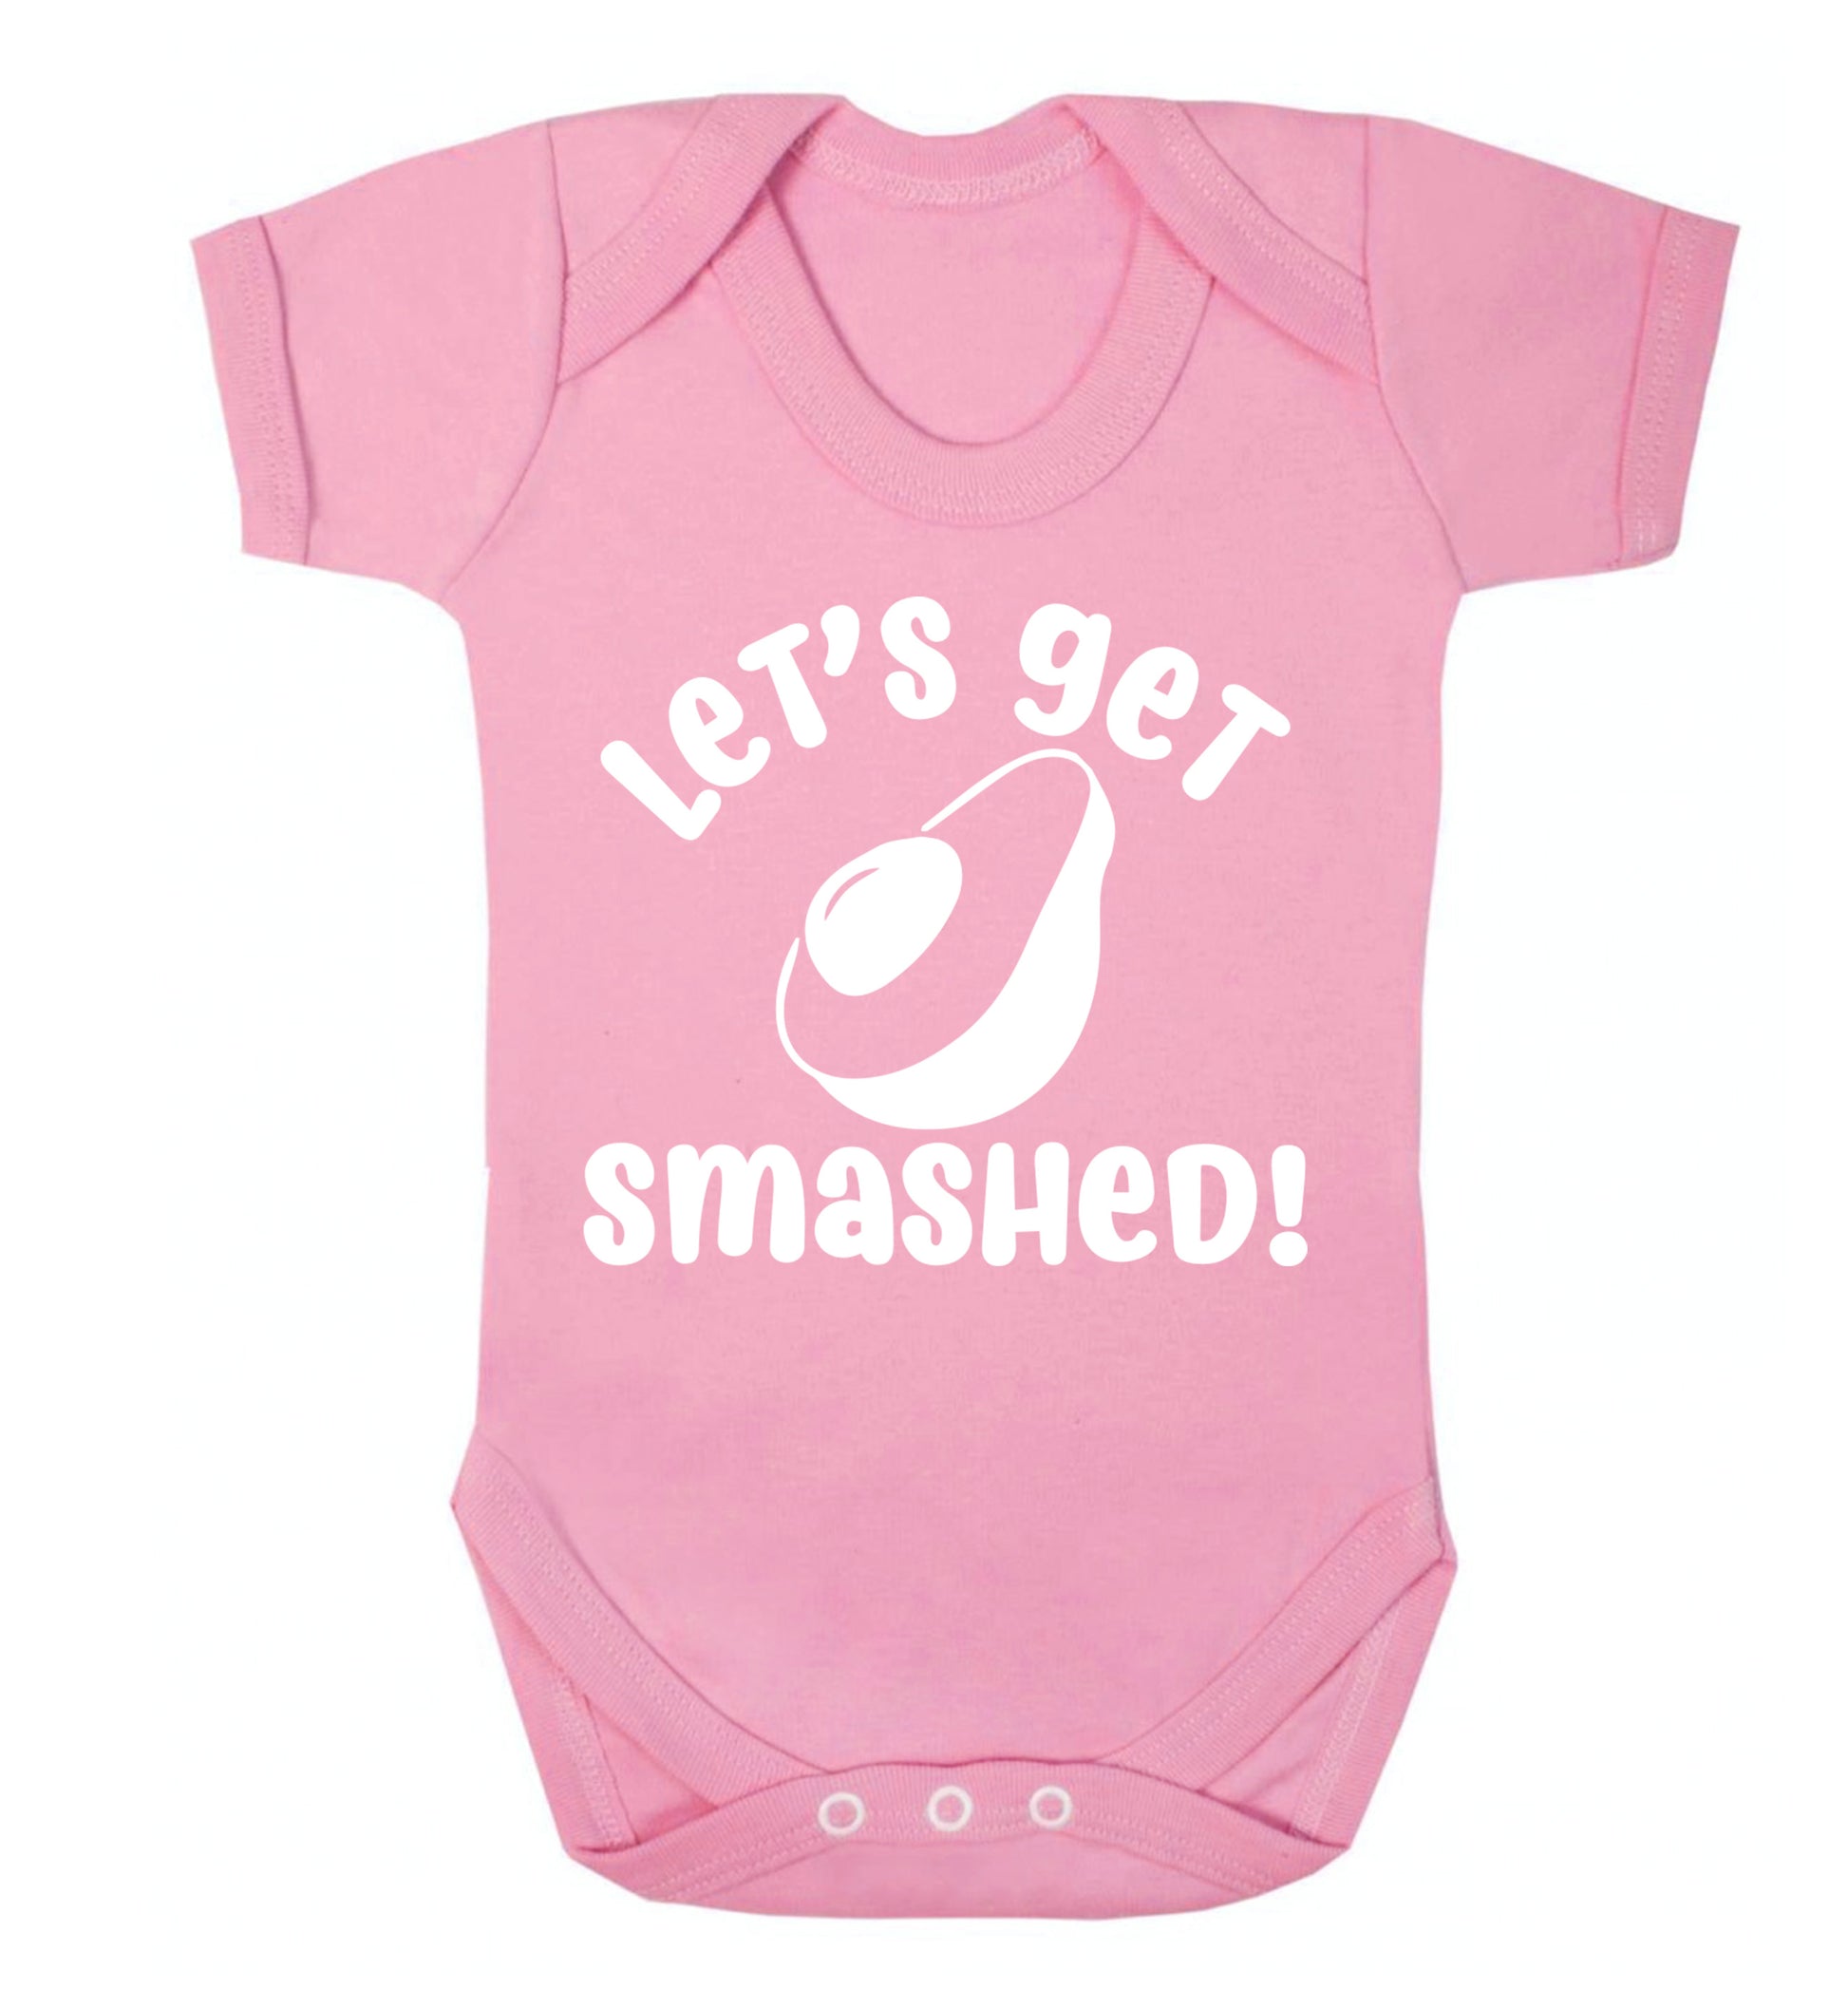 Let's get smashed Baby Vest pale pink 18-24 months